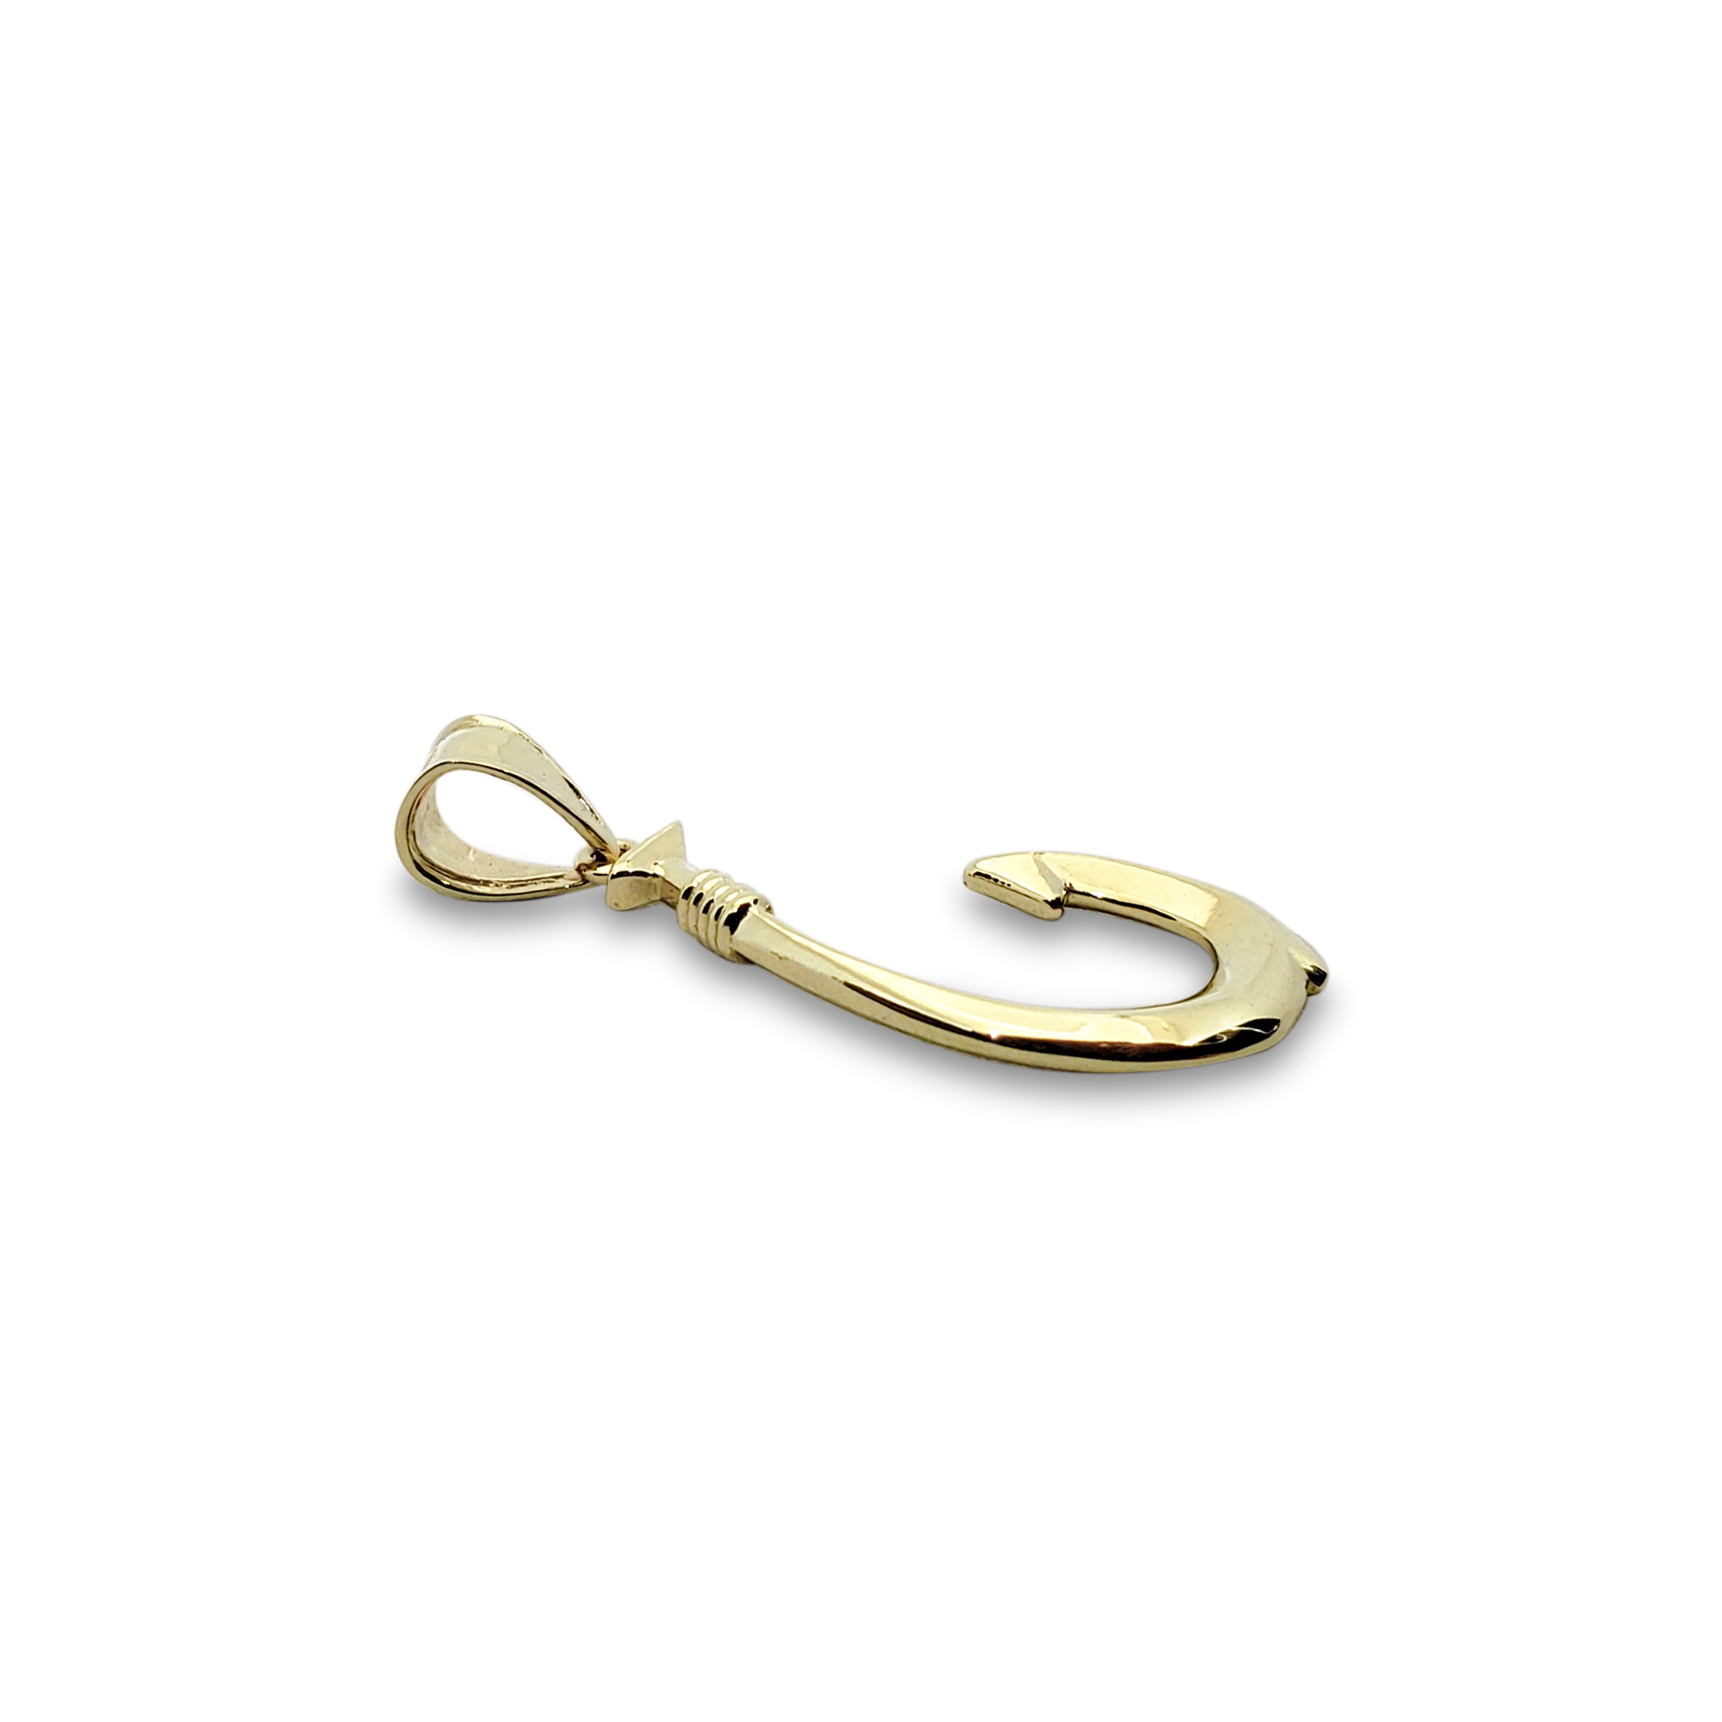 Solid 14K Yellow Gold Fish Hook Pendant, 1 1/16 Long, 1.4 Grams, Hawaiian